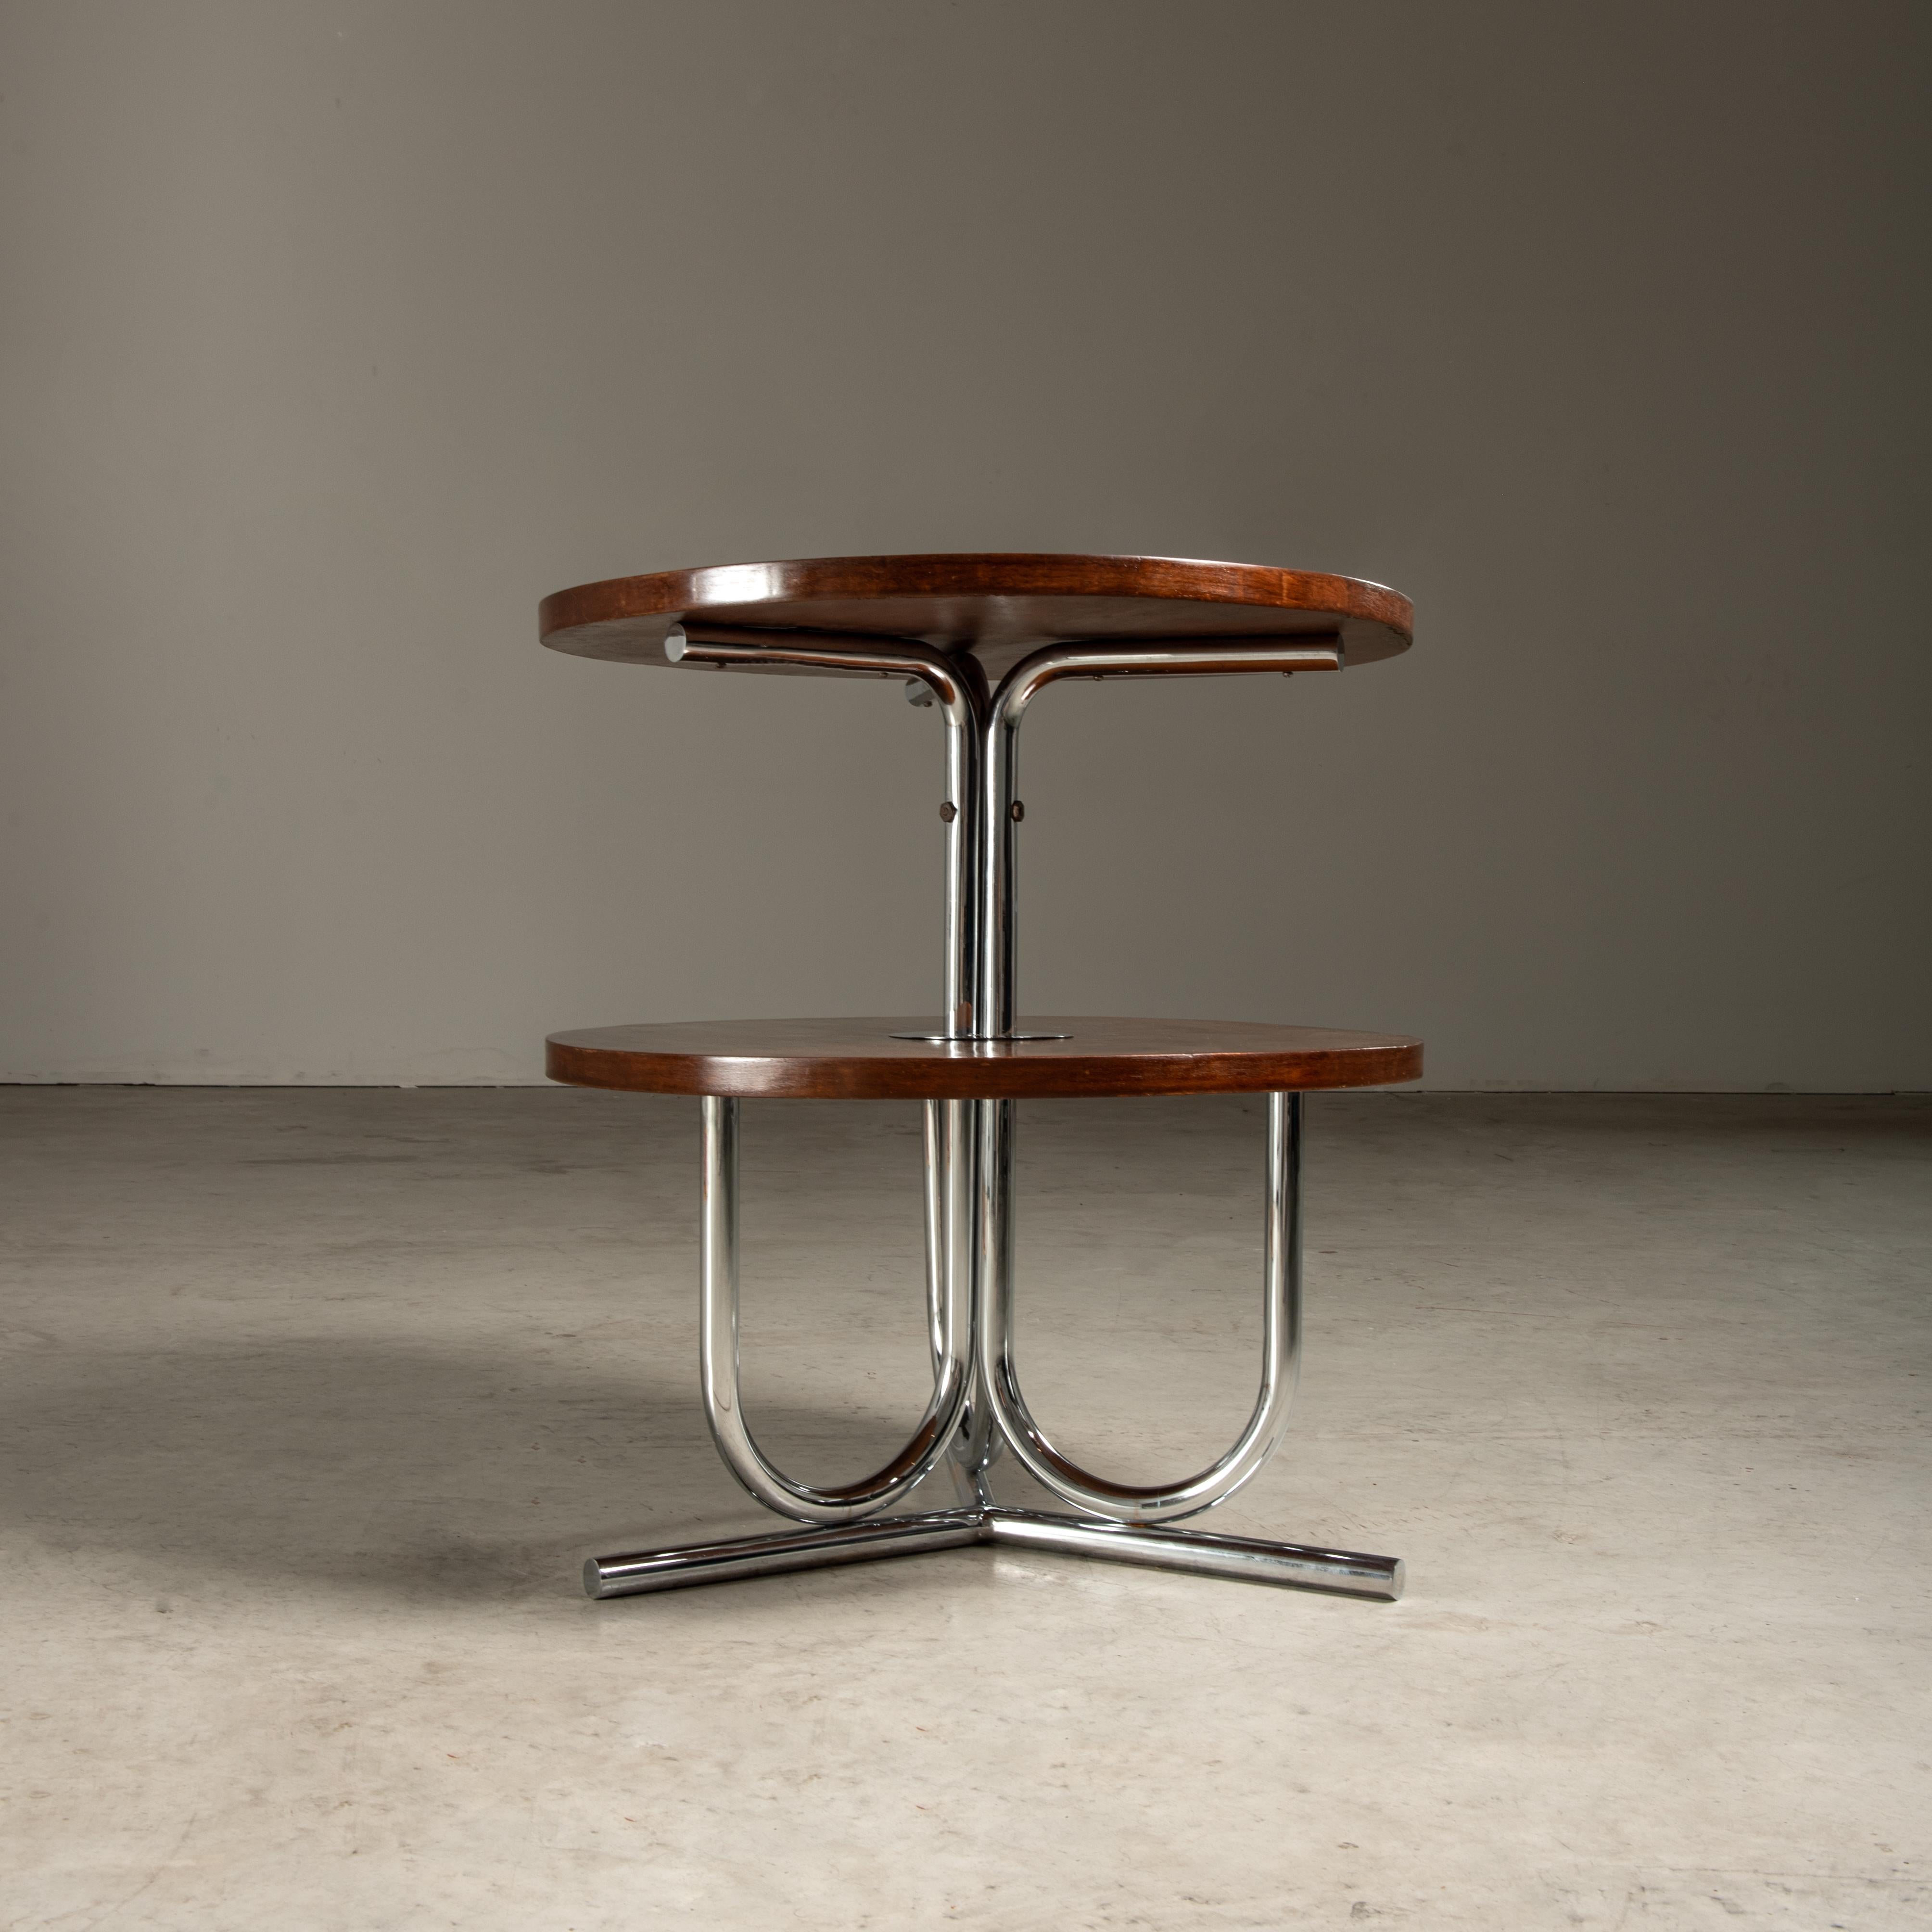 Cette table d'appoint exquise, conçue par le célèbre John Graz, est une pièce remarquable qui incarne la sophistication et l'élégance géométrique du mouvement Art déco, dont Graz lui-même a été l'un des pionniers dans le design brésilien. La table